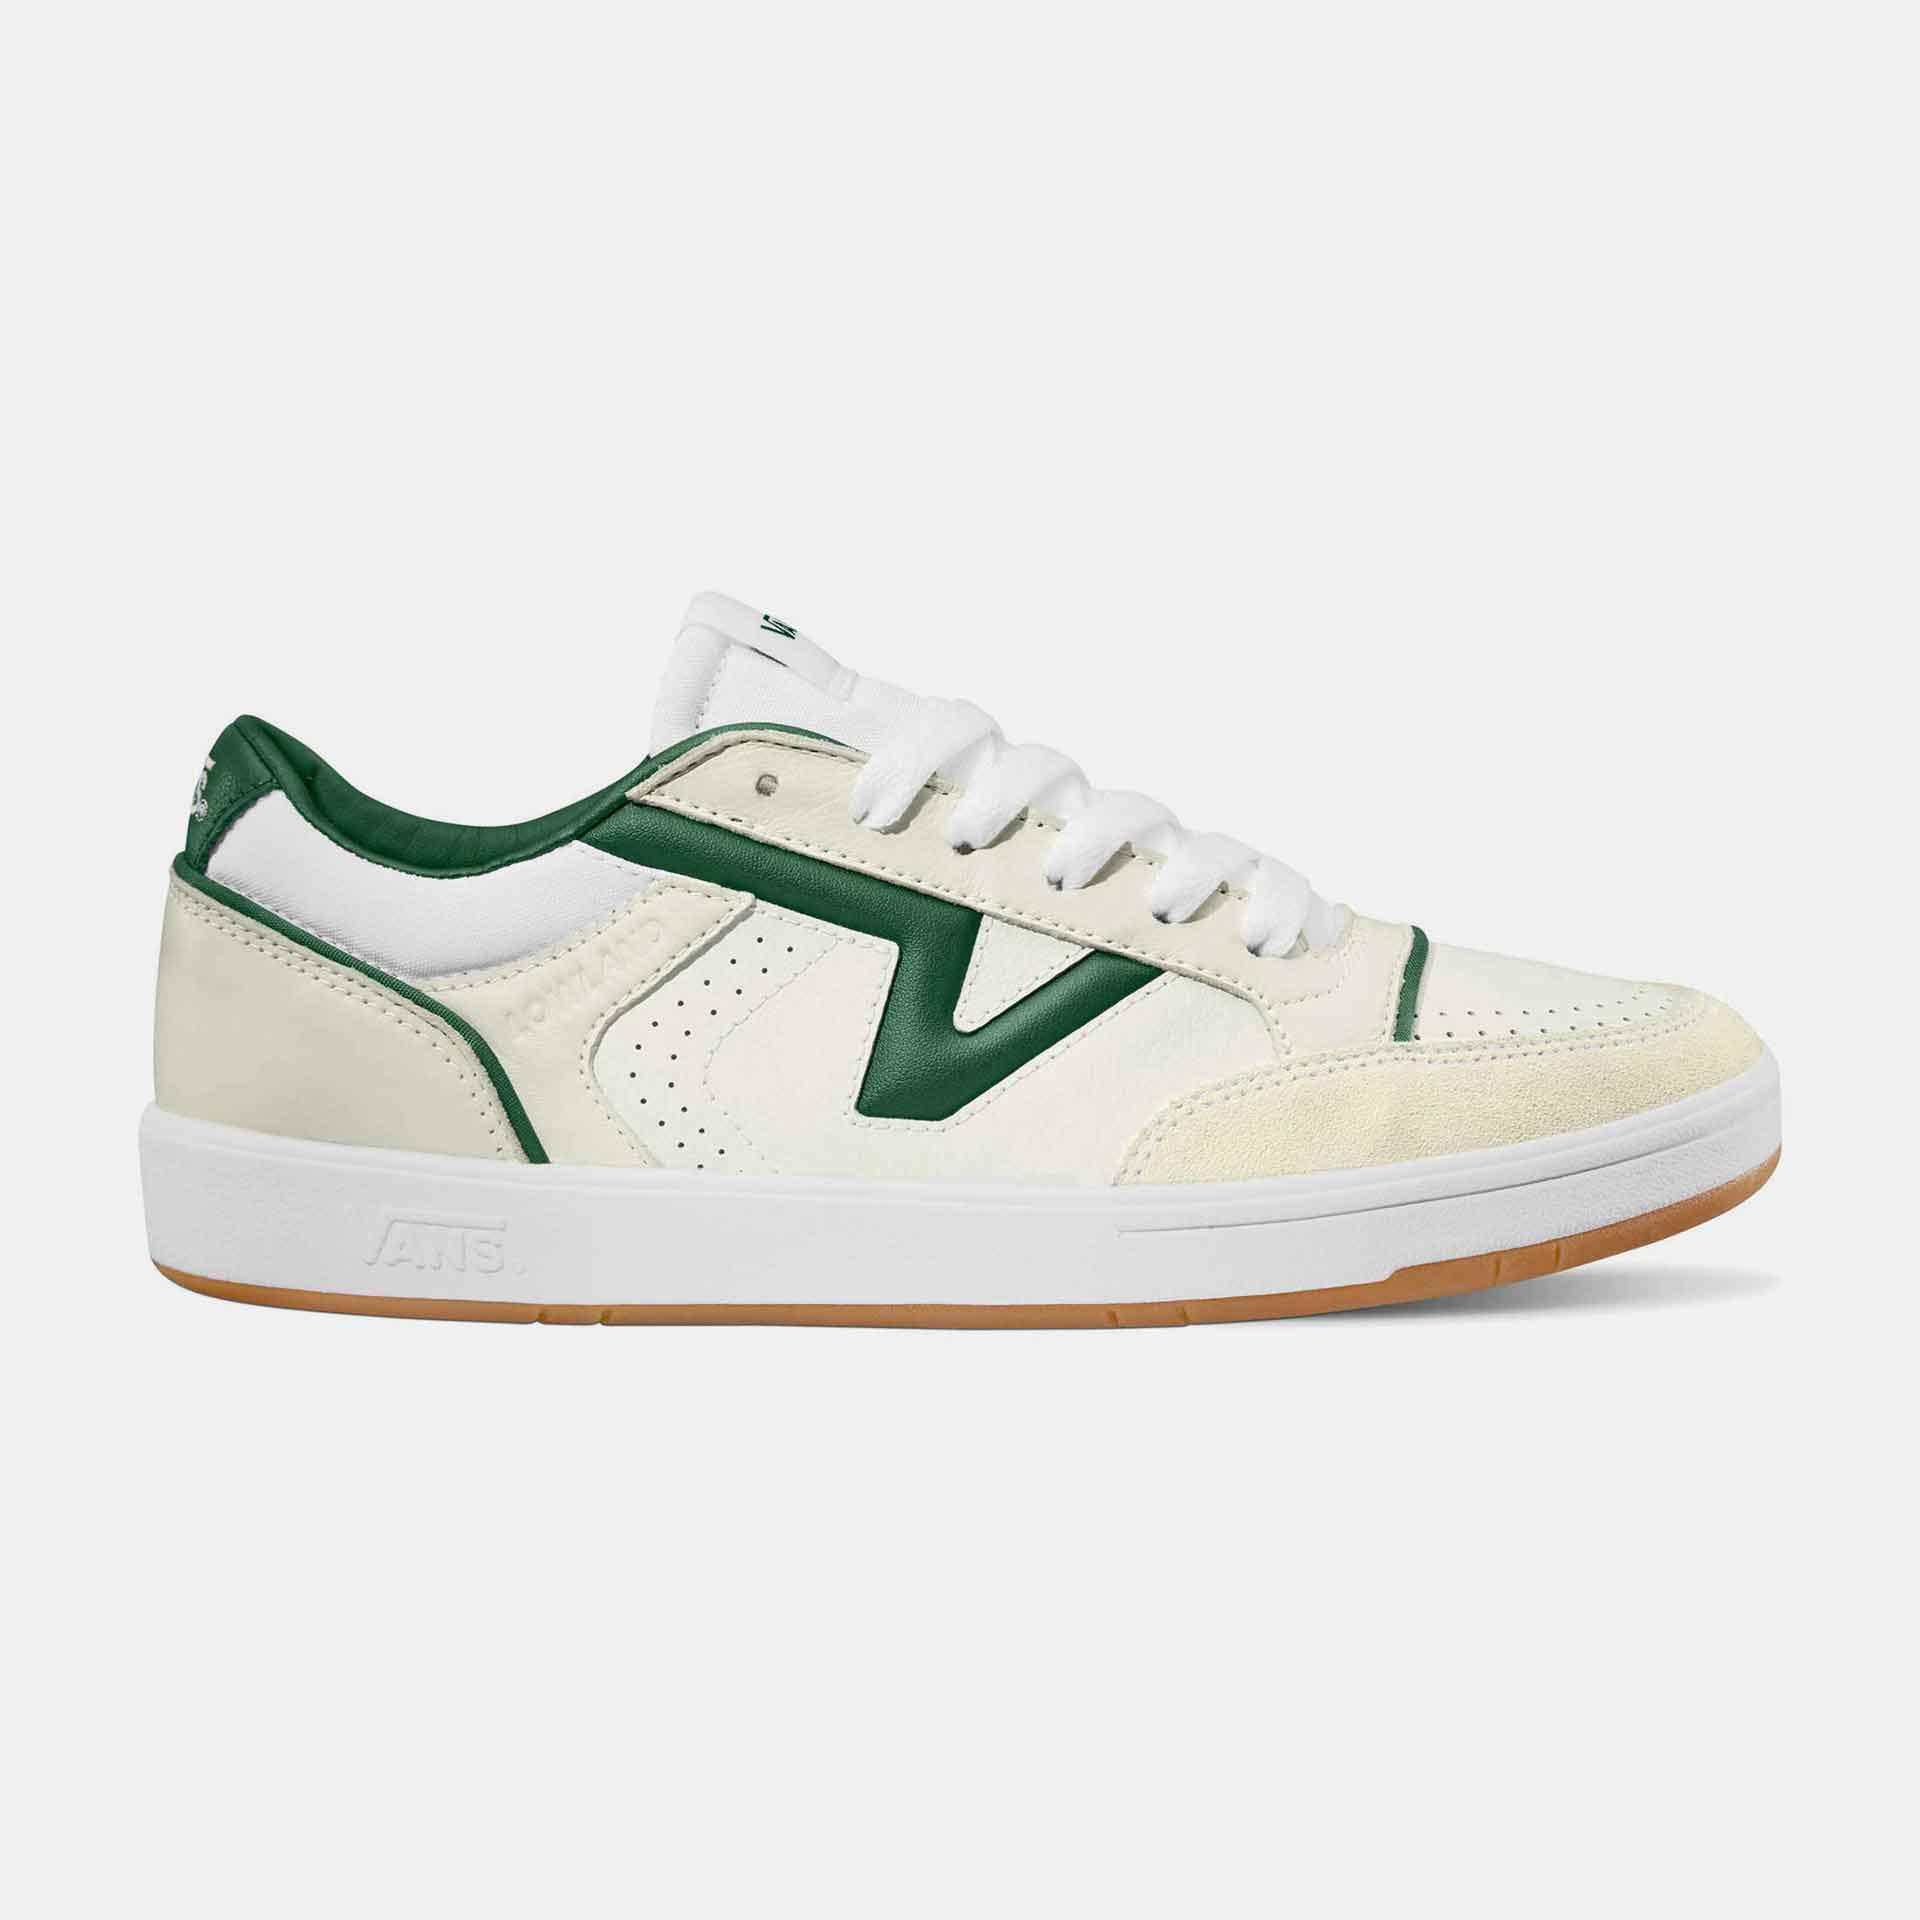 Vans Lowland Sneaker Court Green/White